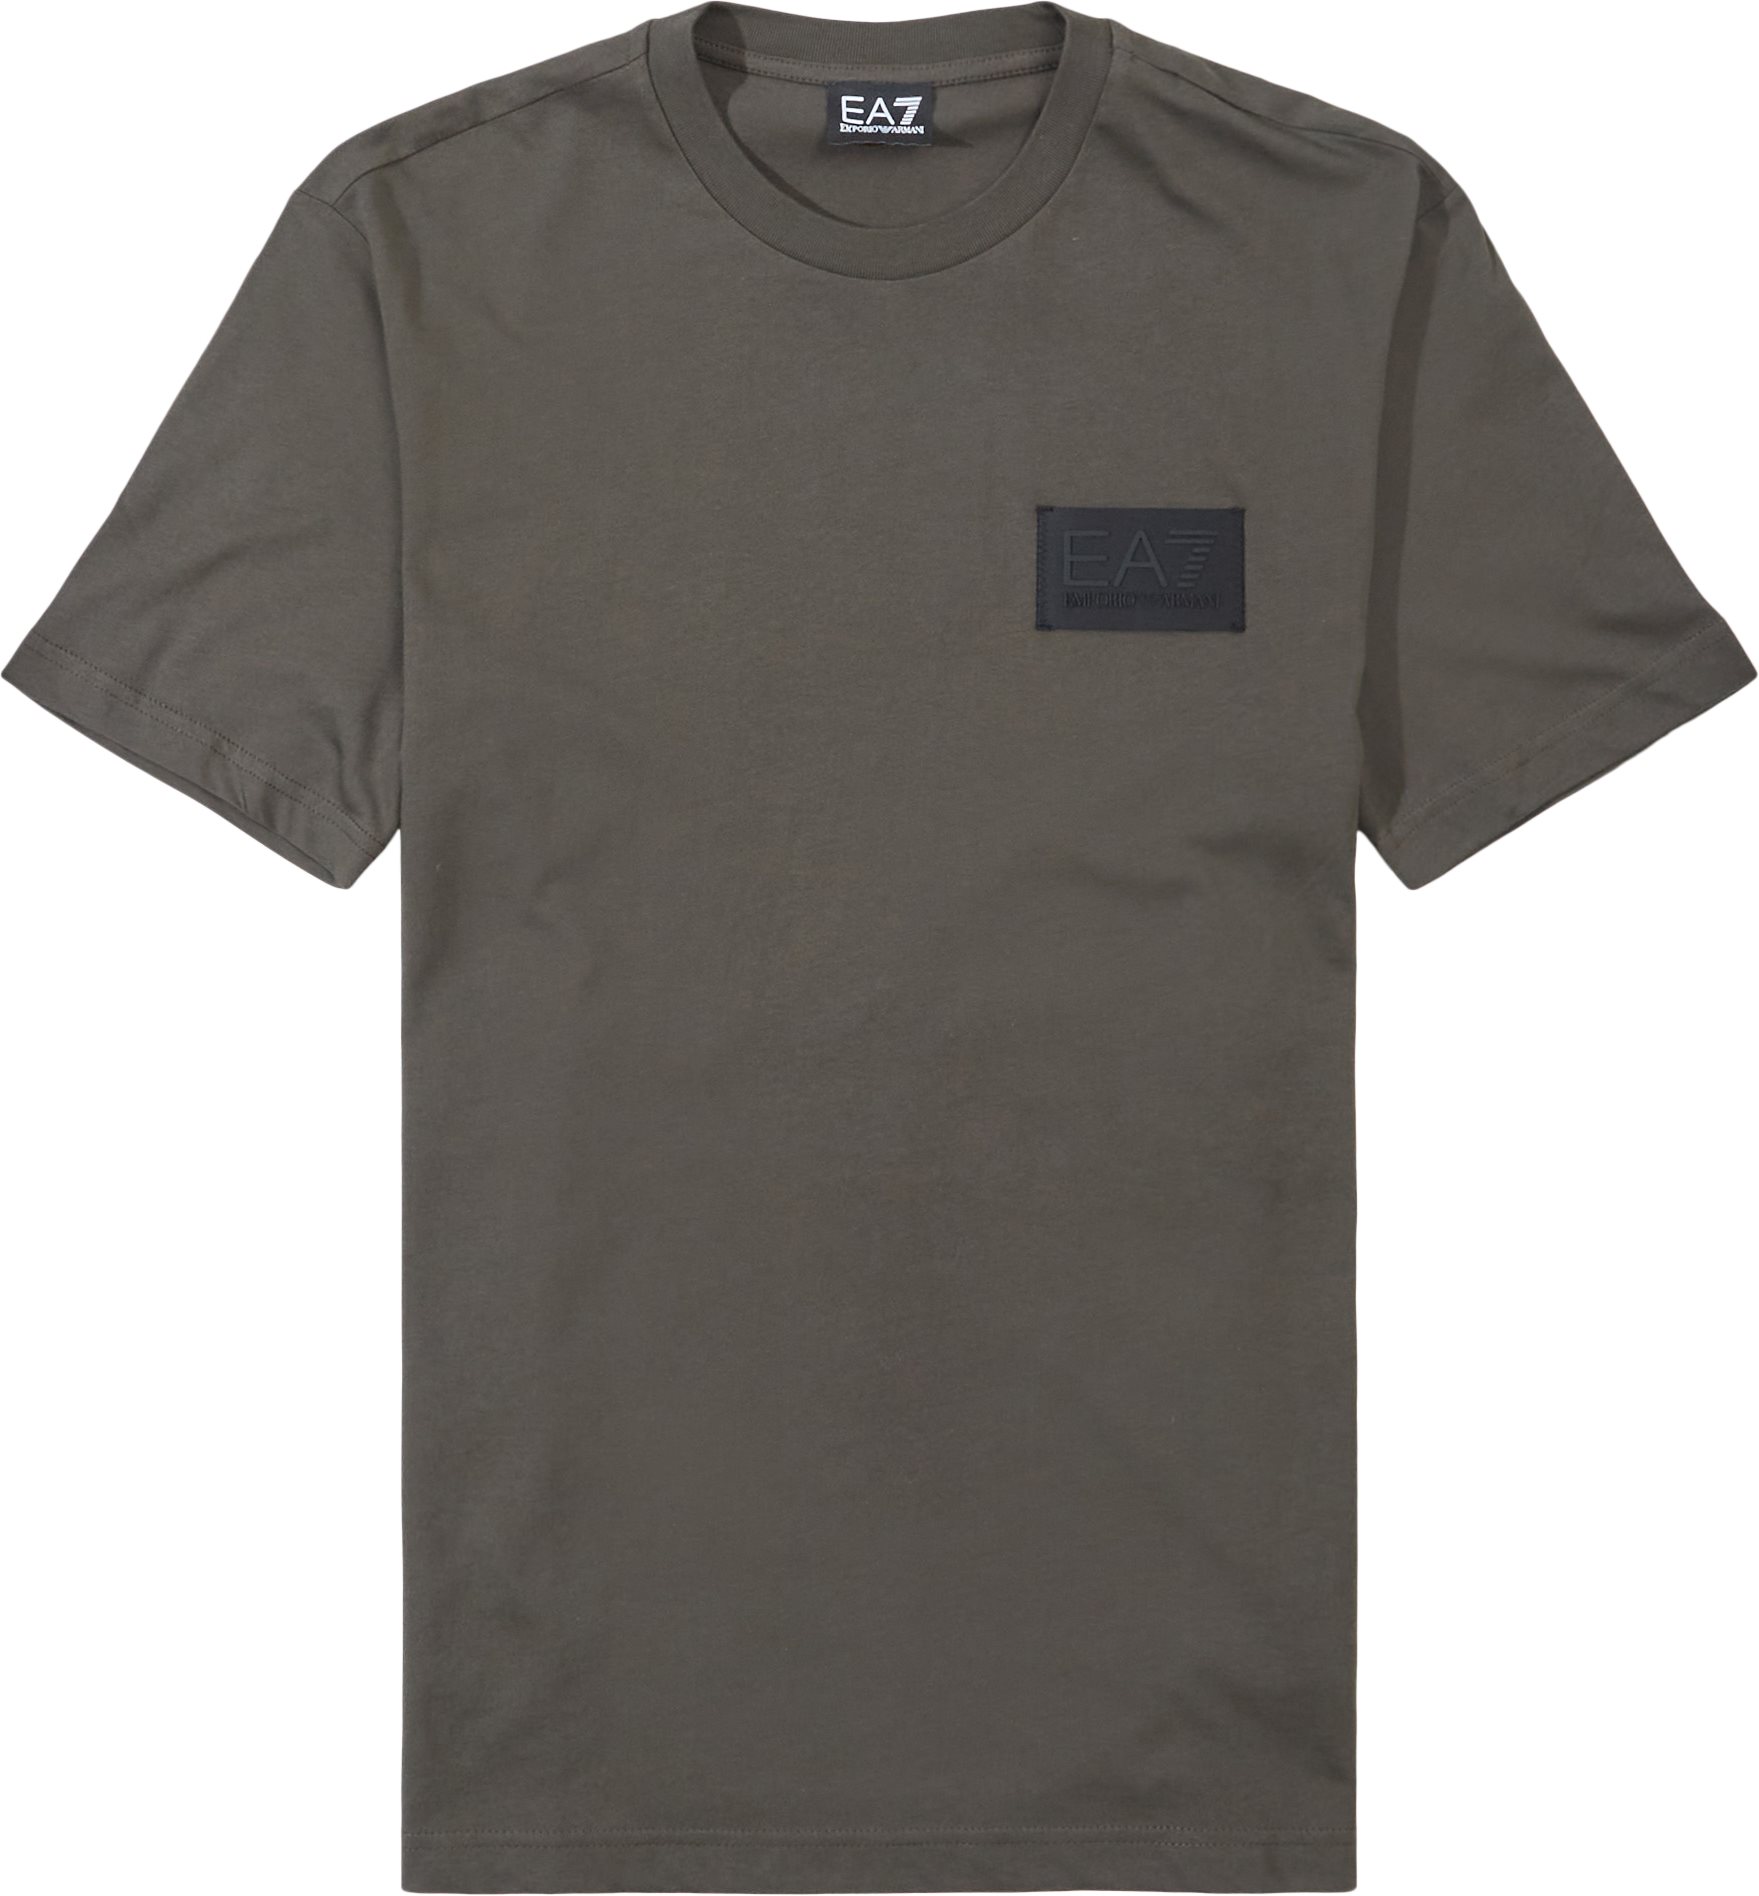 Pjbyz-6lpt04 - T-shirts - Regular fit - Army